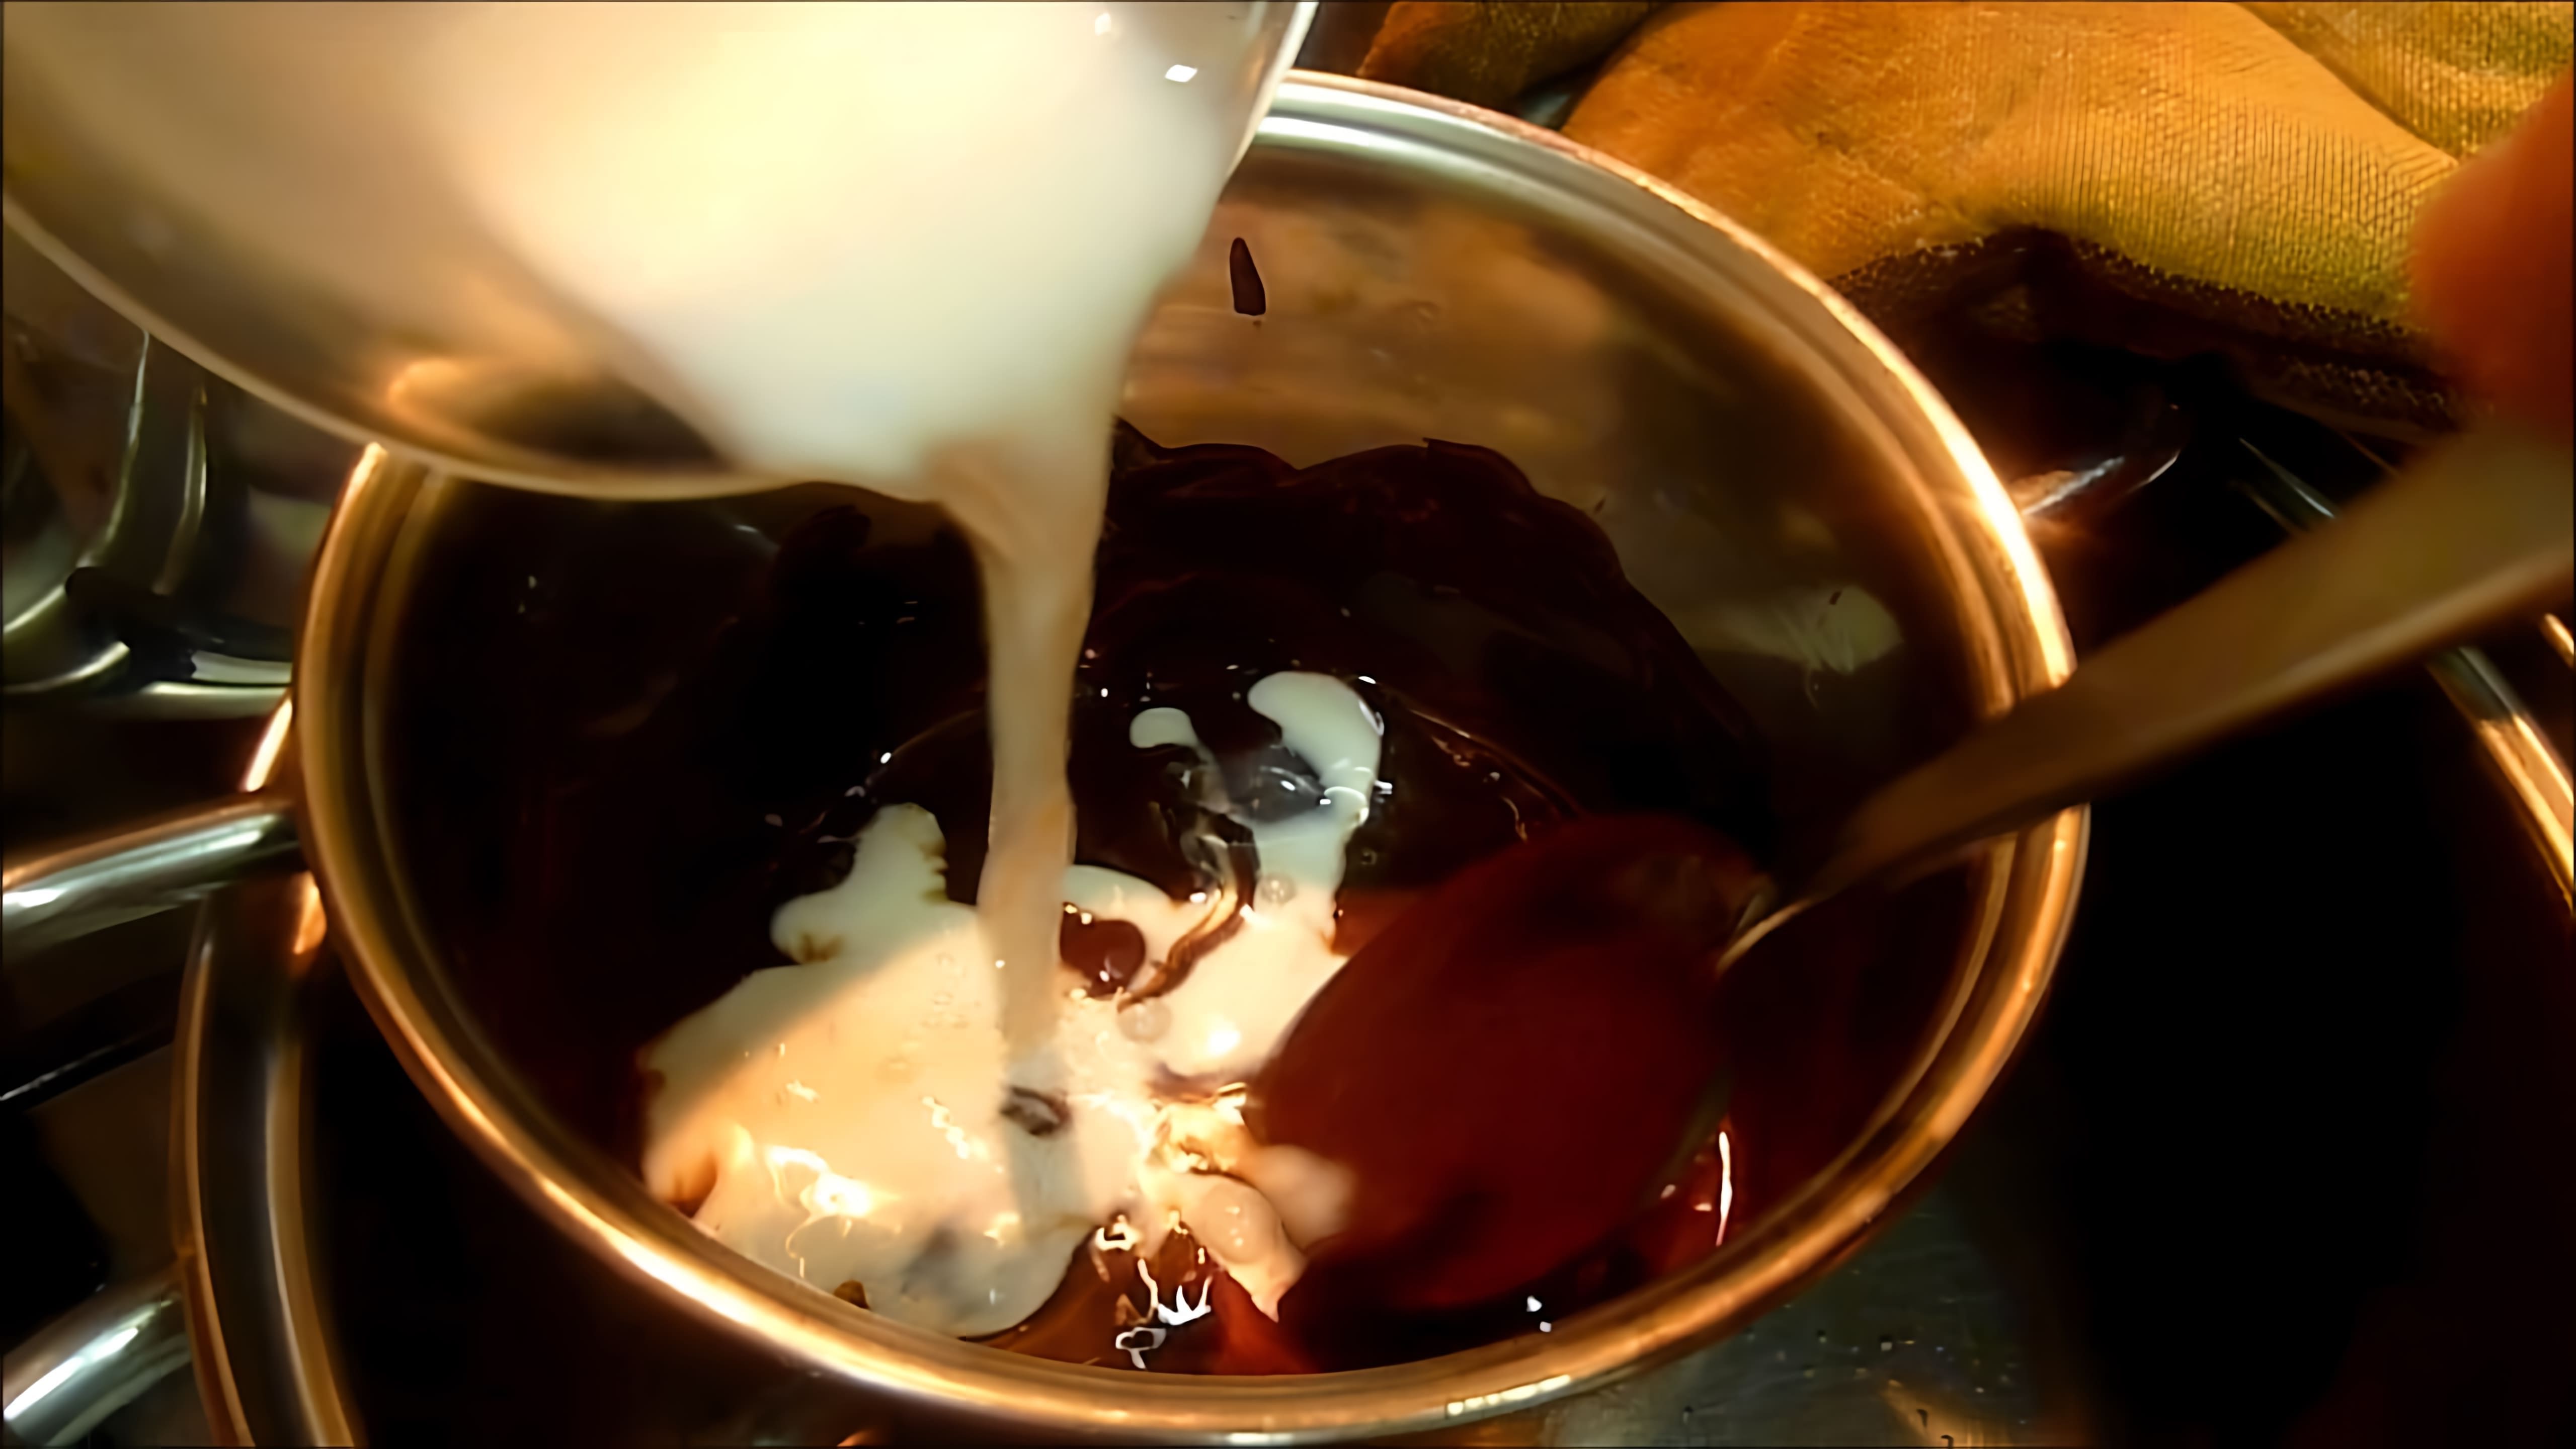 Видео рецепт приготовления шоколадной глазури или глазури